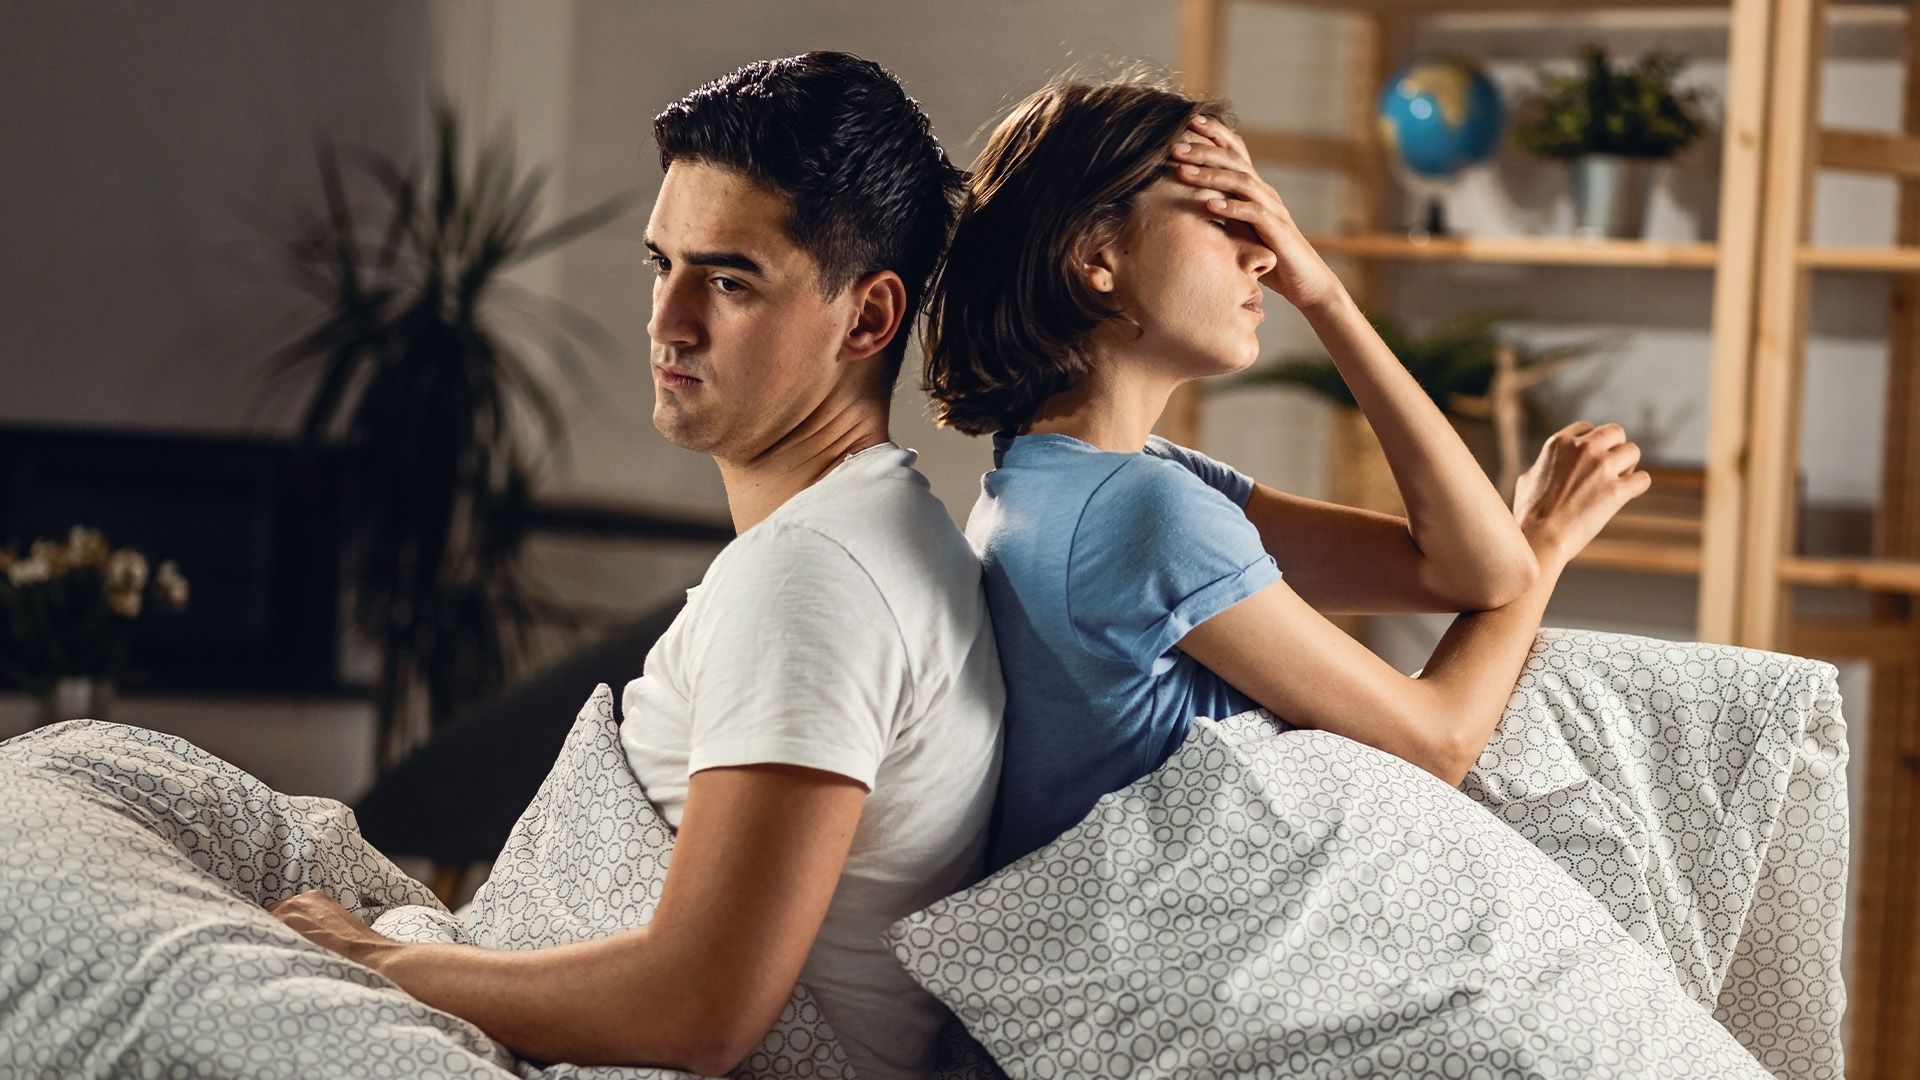 Promotional image for Как прощать порнографические увлечения мужа?